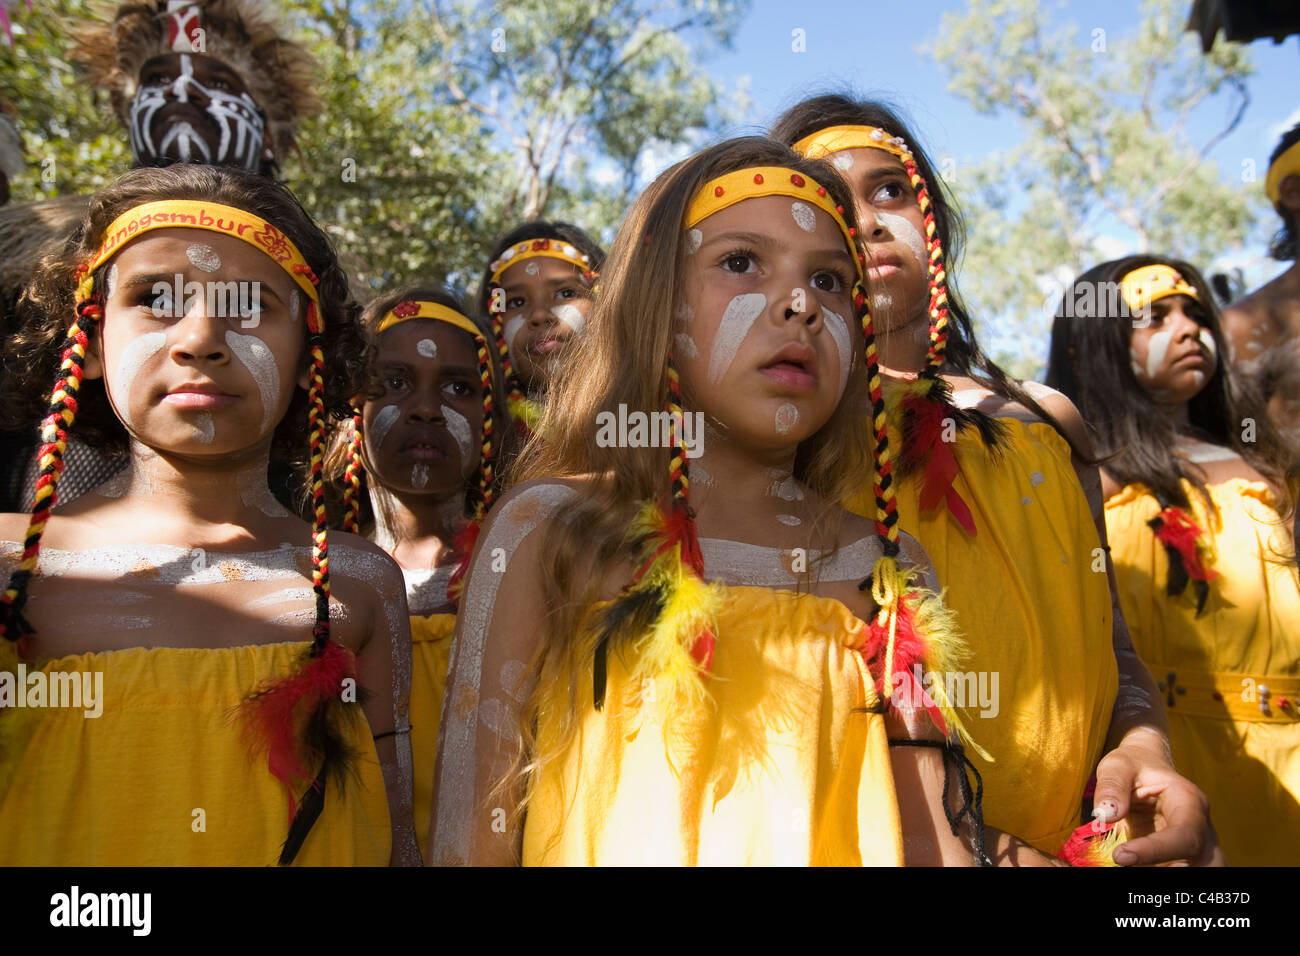 L'Australie, Queensland, Laura. Les jeunes danseurs autochtones au Festival de danse autochtones Laura. Banque D'Images